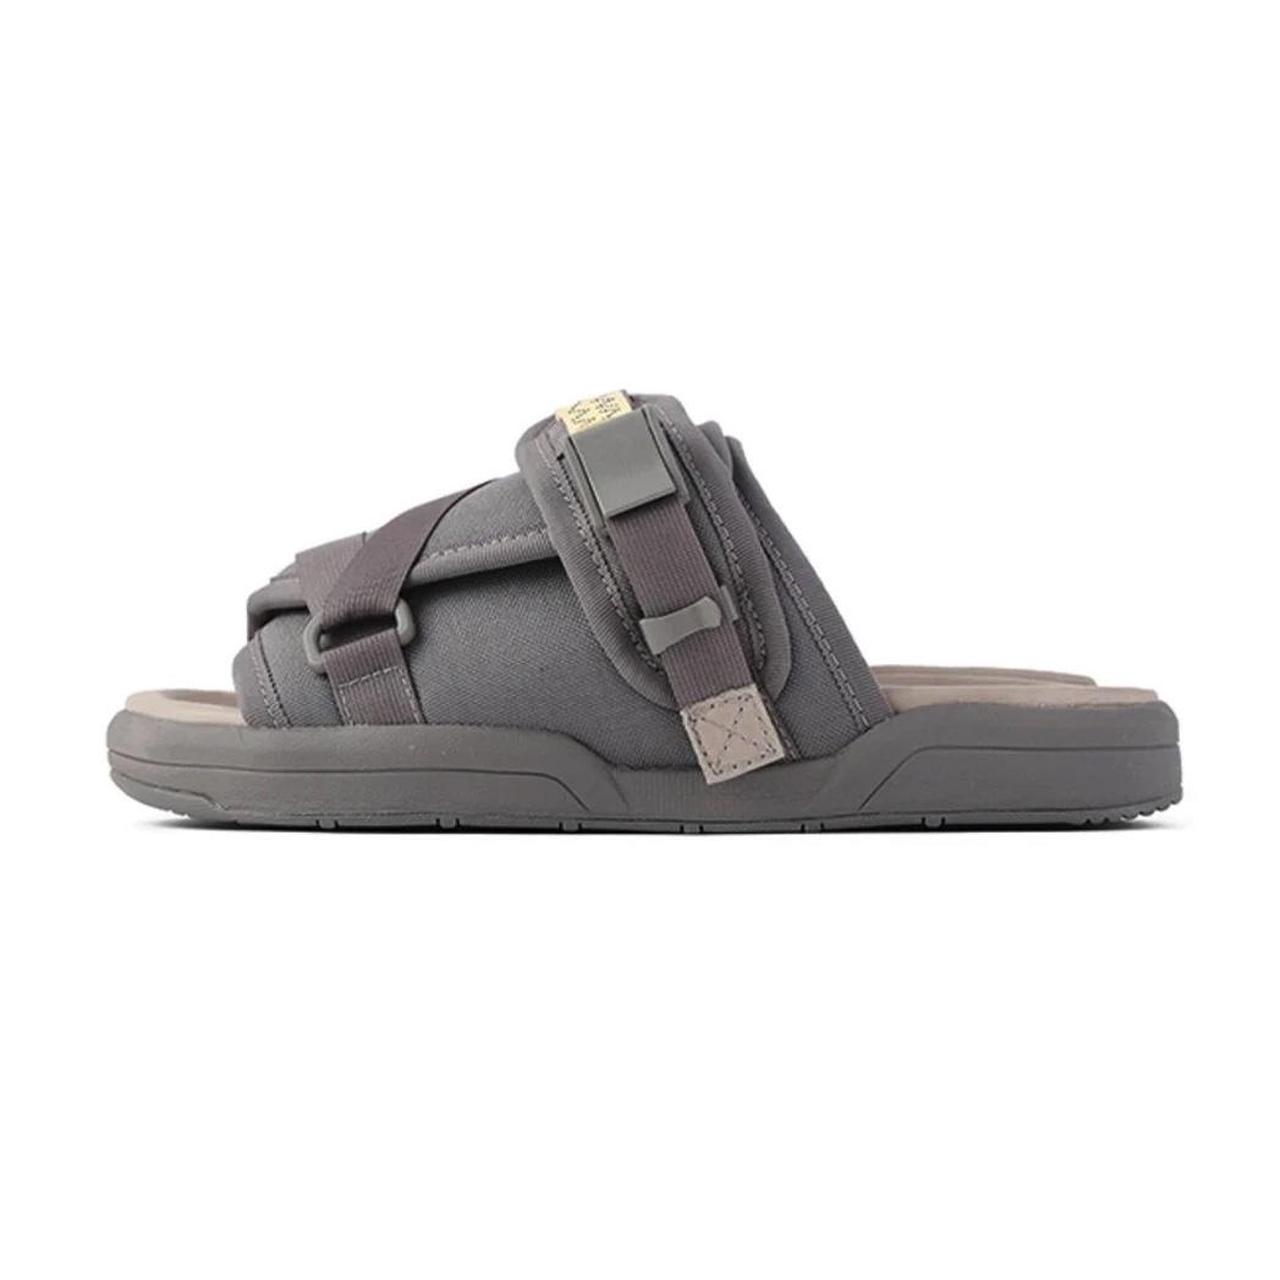 Visvim Christo sandals in grey, Size XS (size 6-7